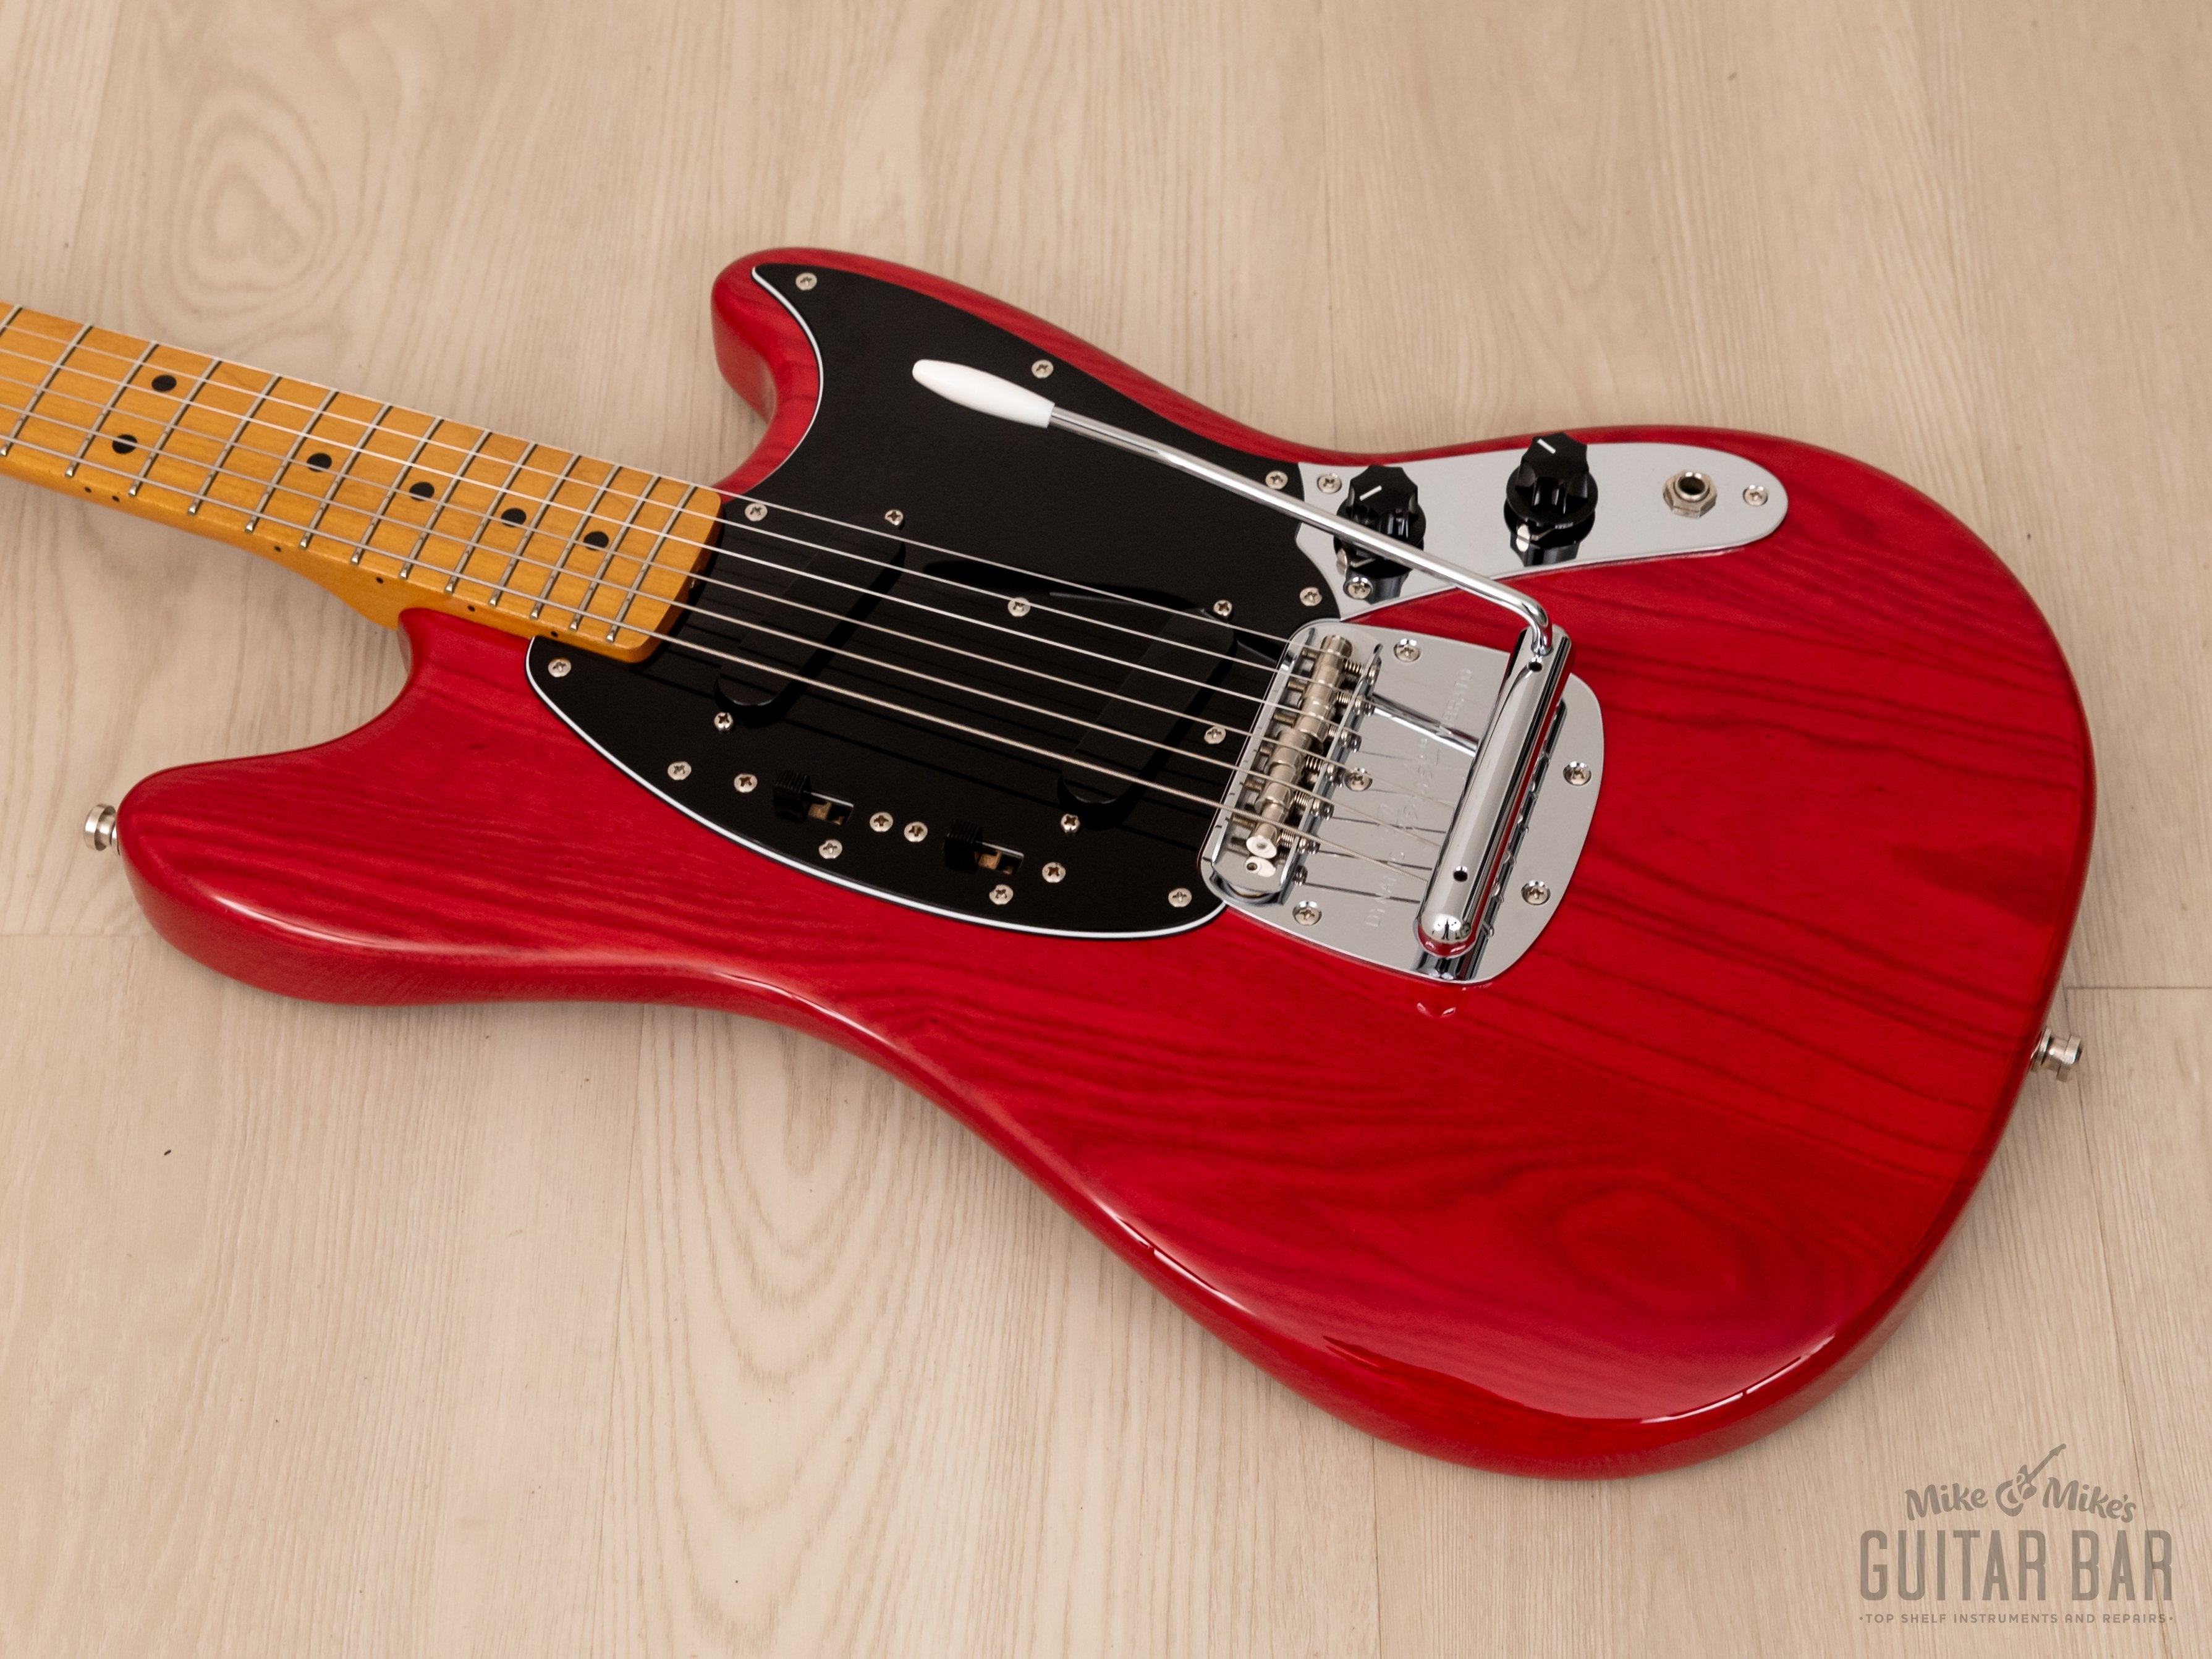 2010 Fender Mustang ‘77 Vintage Reissue MG77 Trans Red, Ash Body w/ Maple Board, Japan MIJ